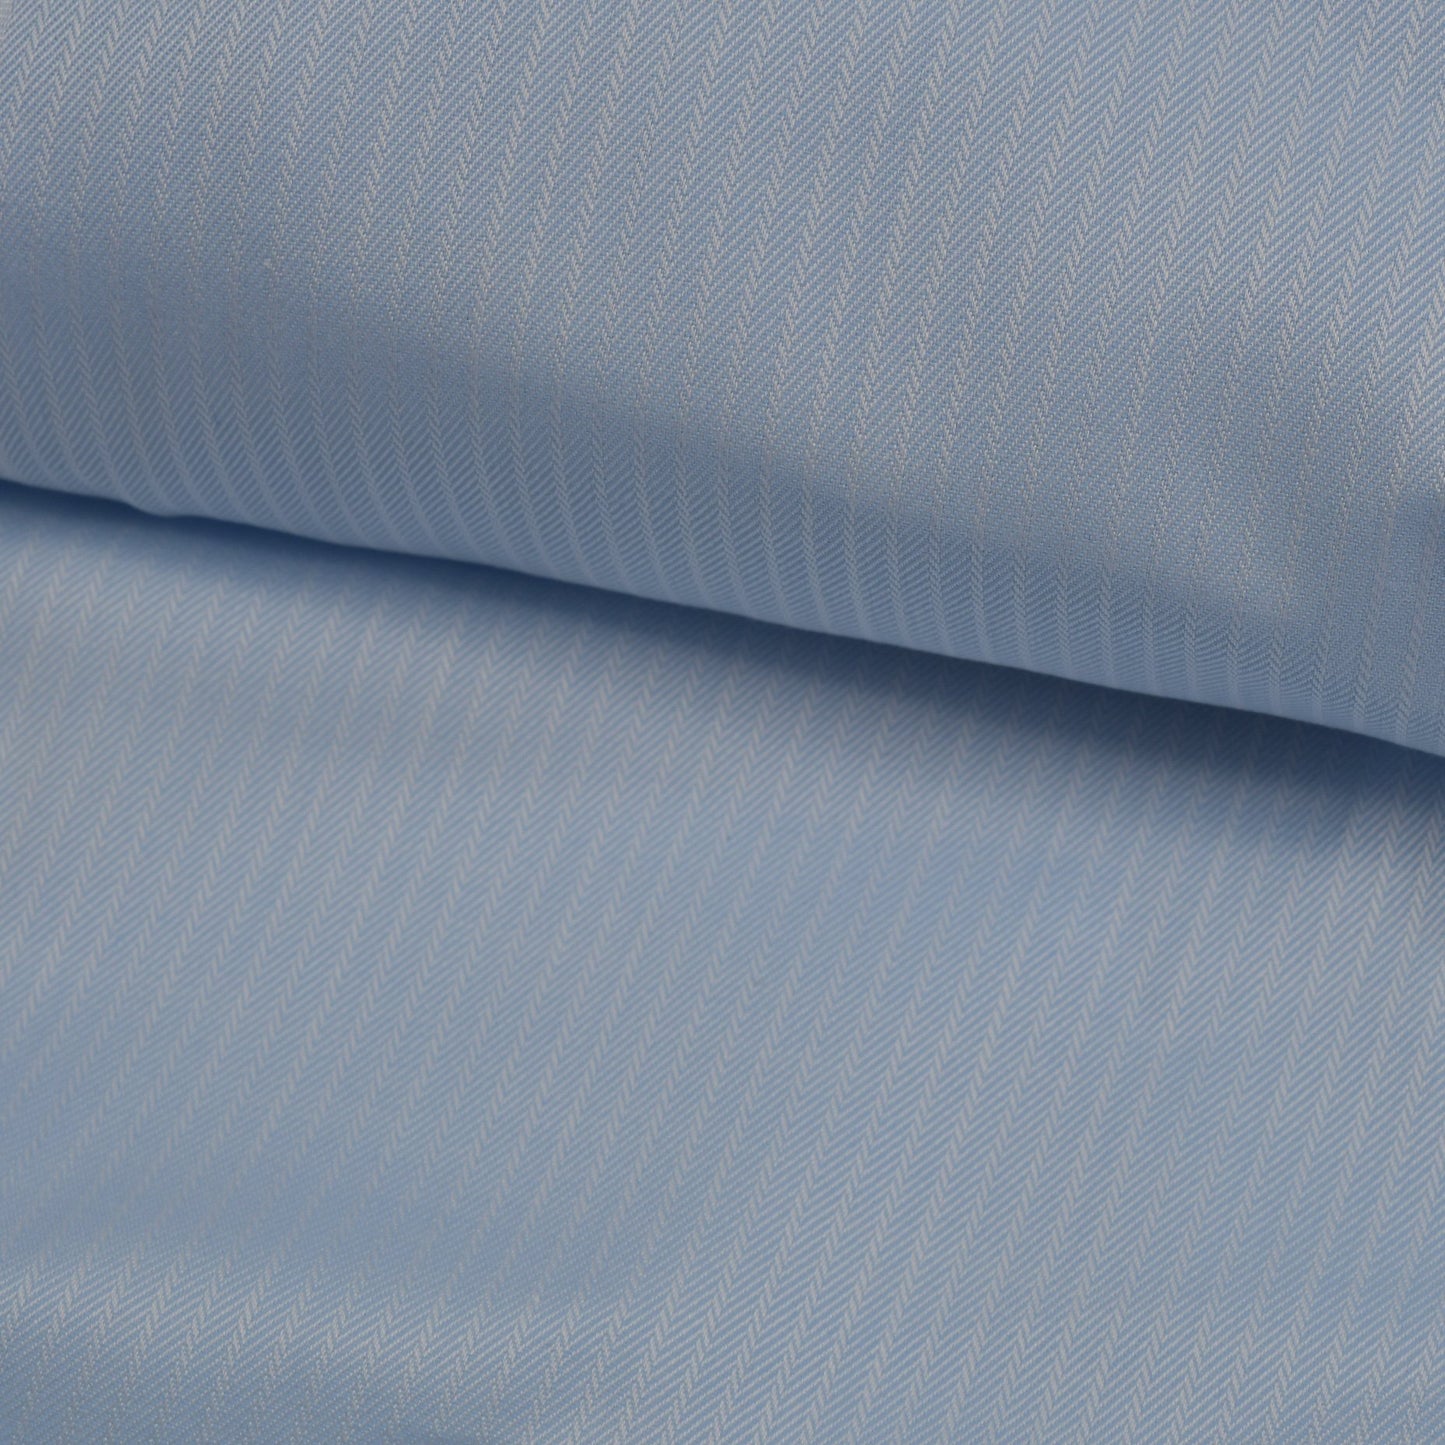 Supercav Blue Thin White Stripes Cotton Shirt